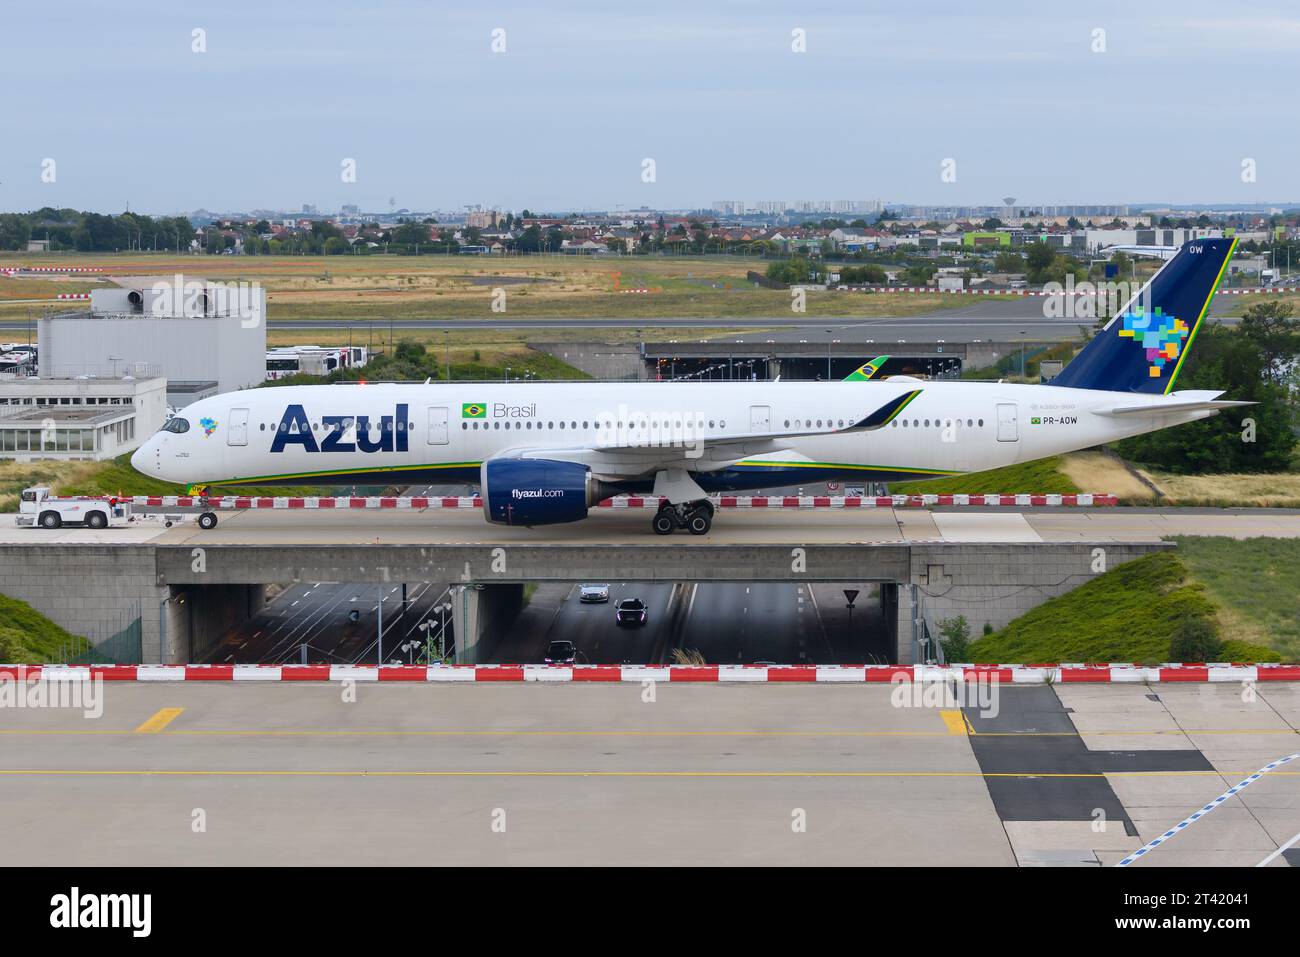 Azul Brazilian Airlines Airbus A350 au sol à l'aéroport de Paris Orly, France. Avion de la compagnie aérienne Azul Linhas Aéreas du Brésil A350-900. Banque D'Images